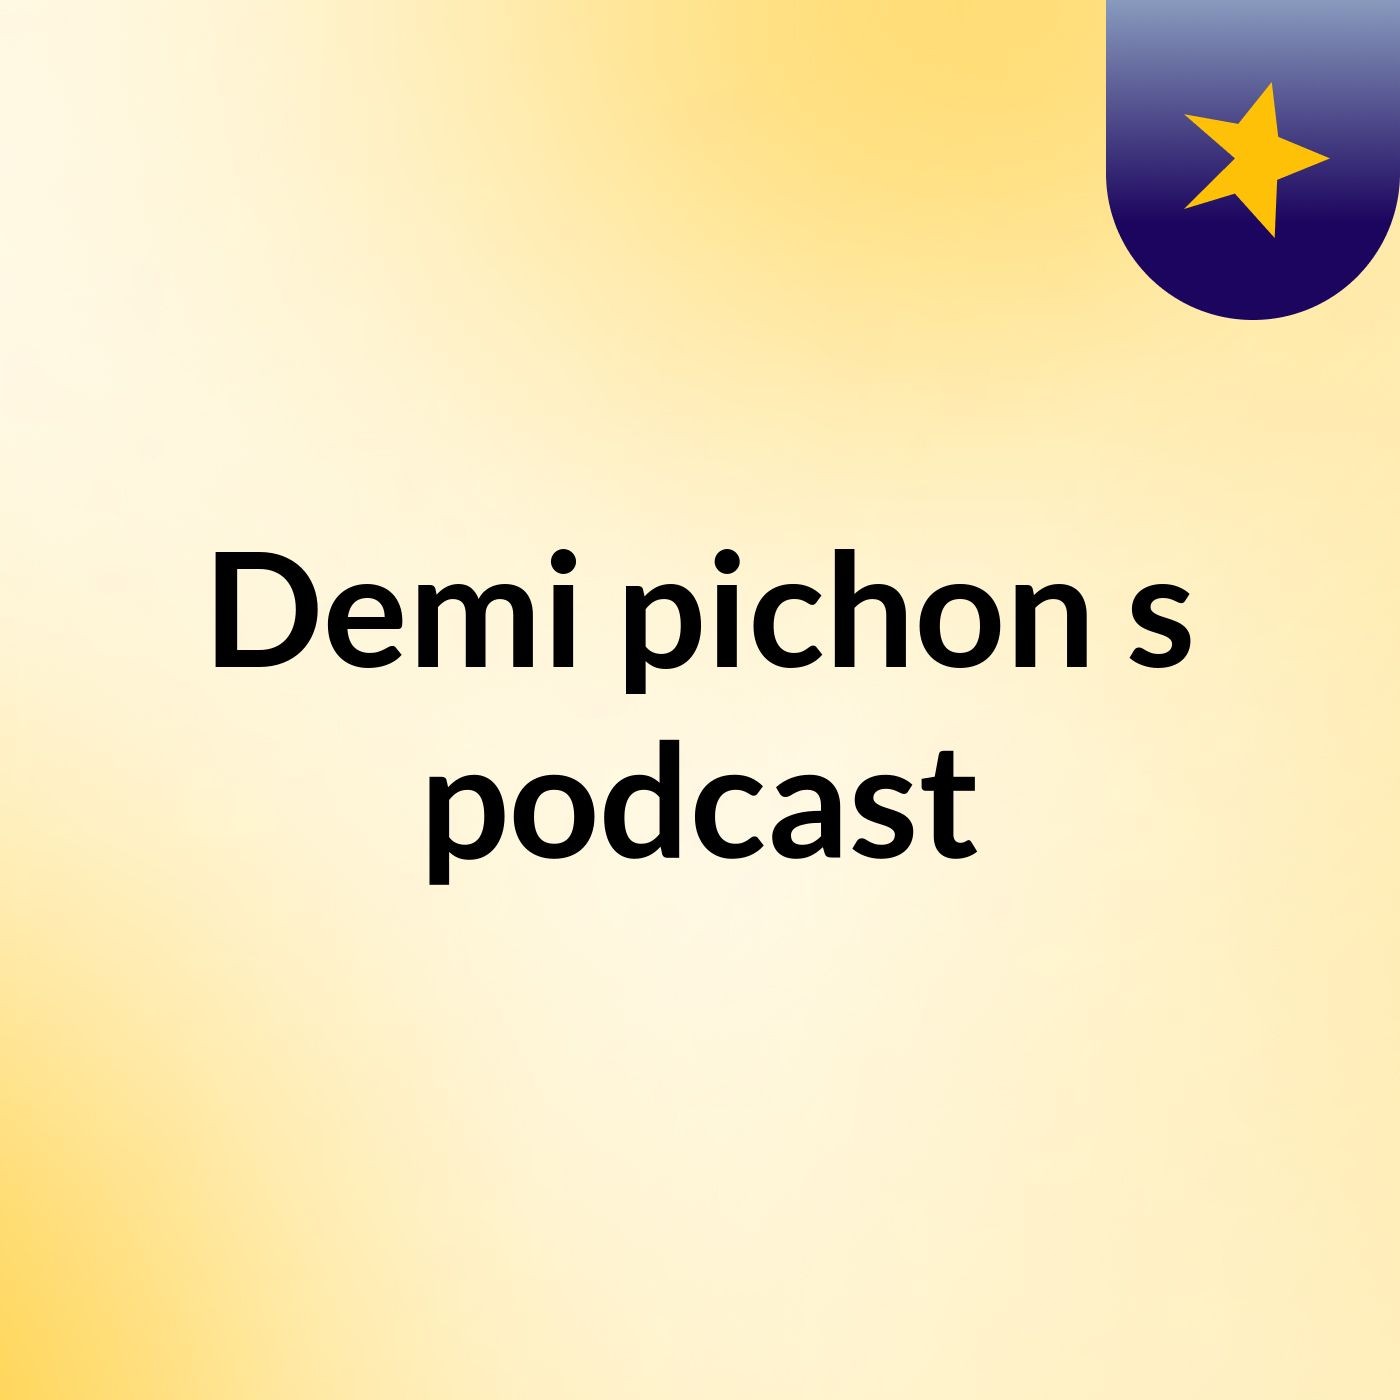 Episode 2 - Demi pichon's podcast